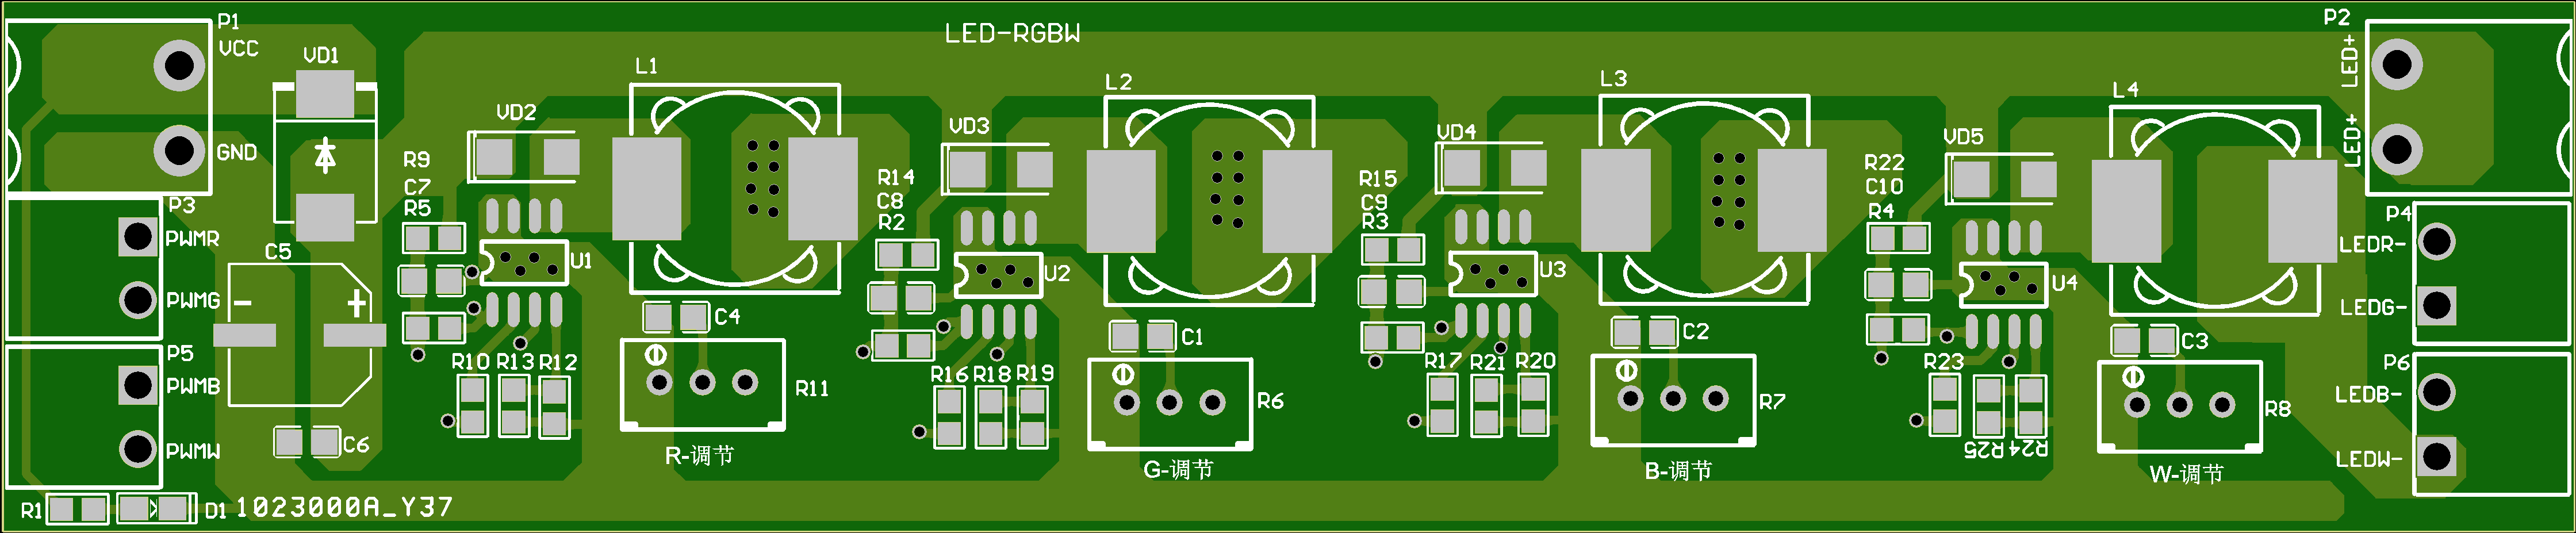 RGBW-LED恒流驱动模块PCB设计原理图1